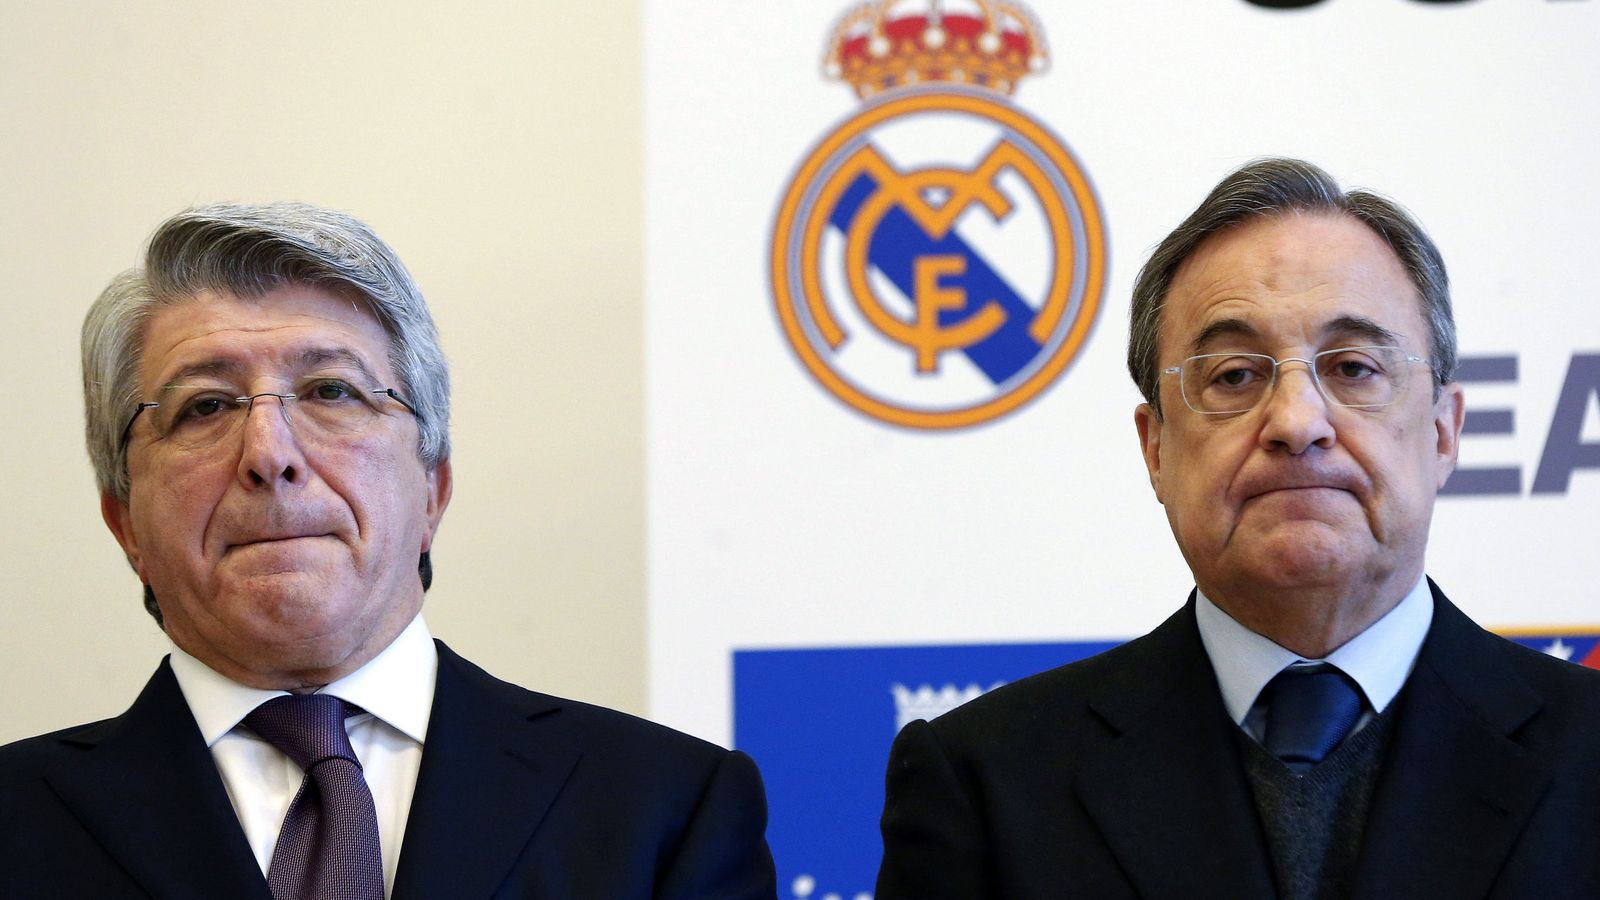 Foto: En la imagen, Enrique Cerezo y Florentino Pérez, presidentes de Atlético y Real Madrid, respectivamente (EFE)